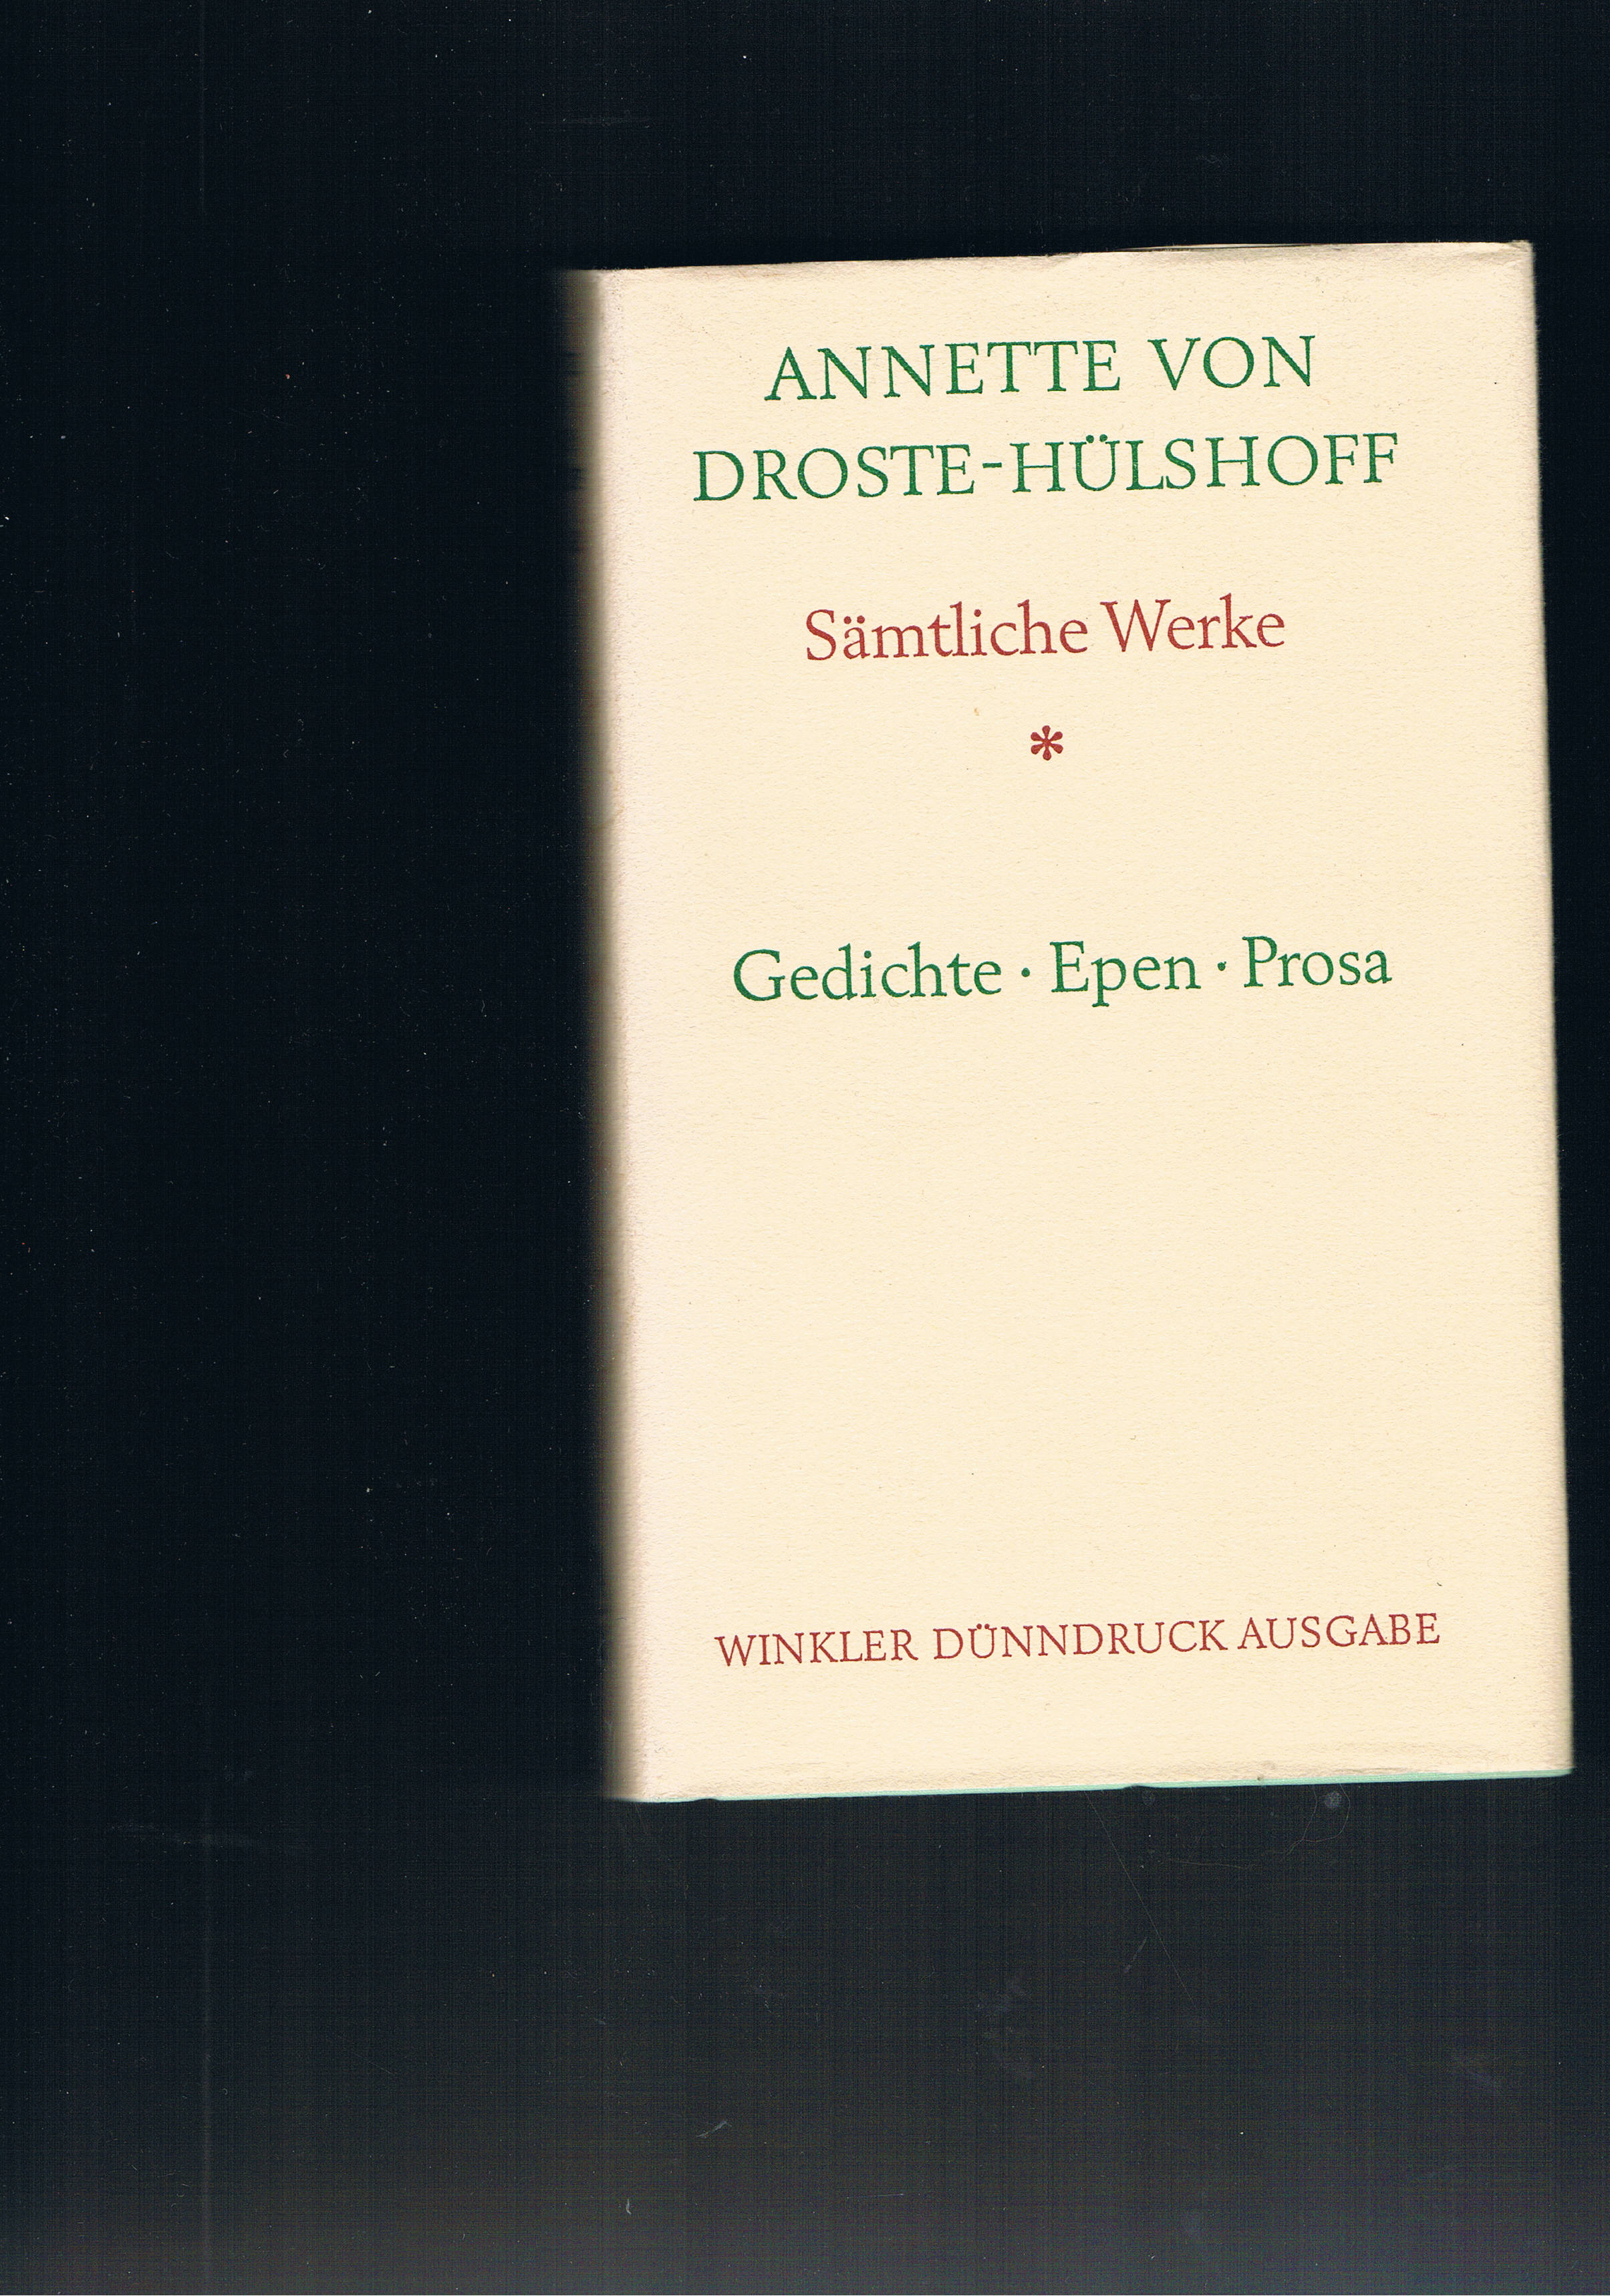 Sämtliche Werke Gedichte Epen Prosa - Annette von Droste-Hülshoff